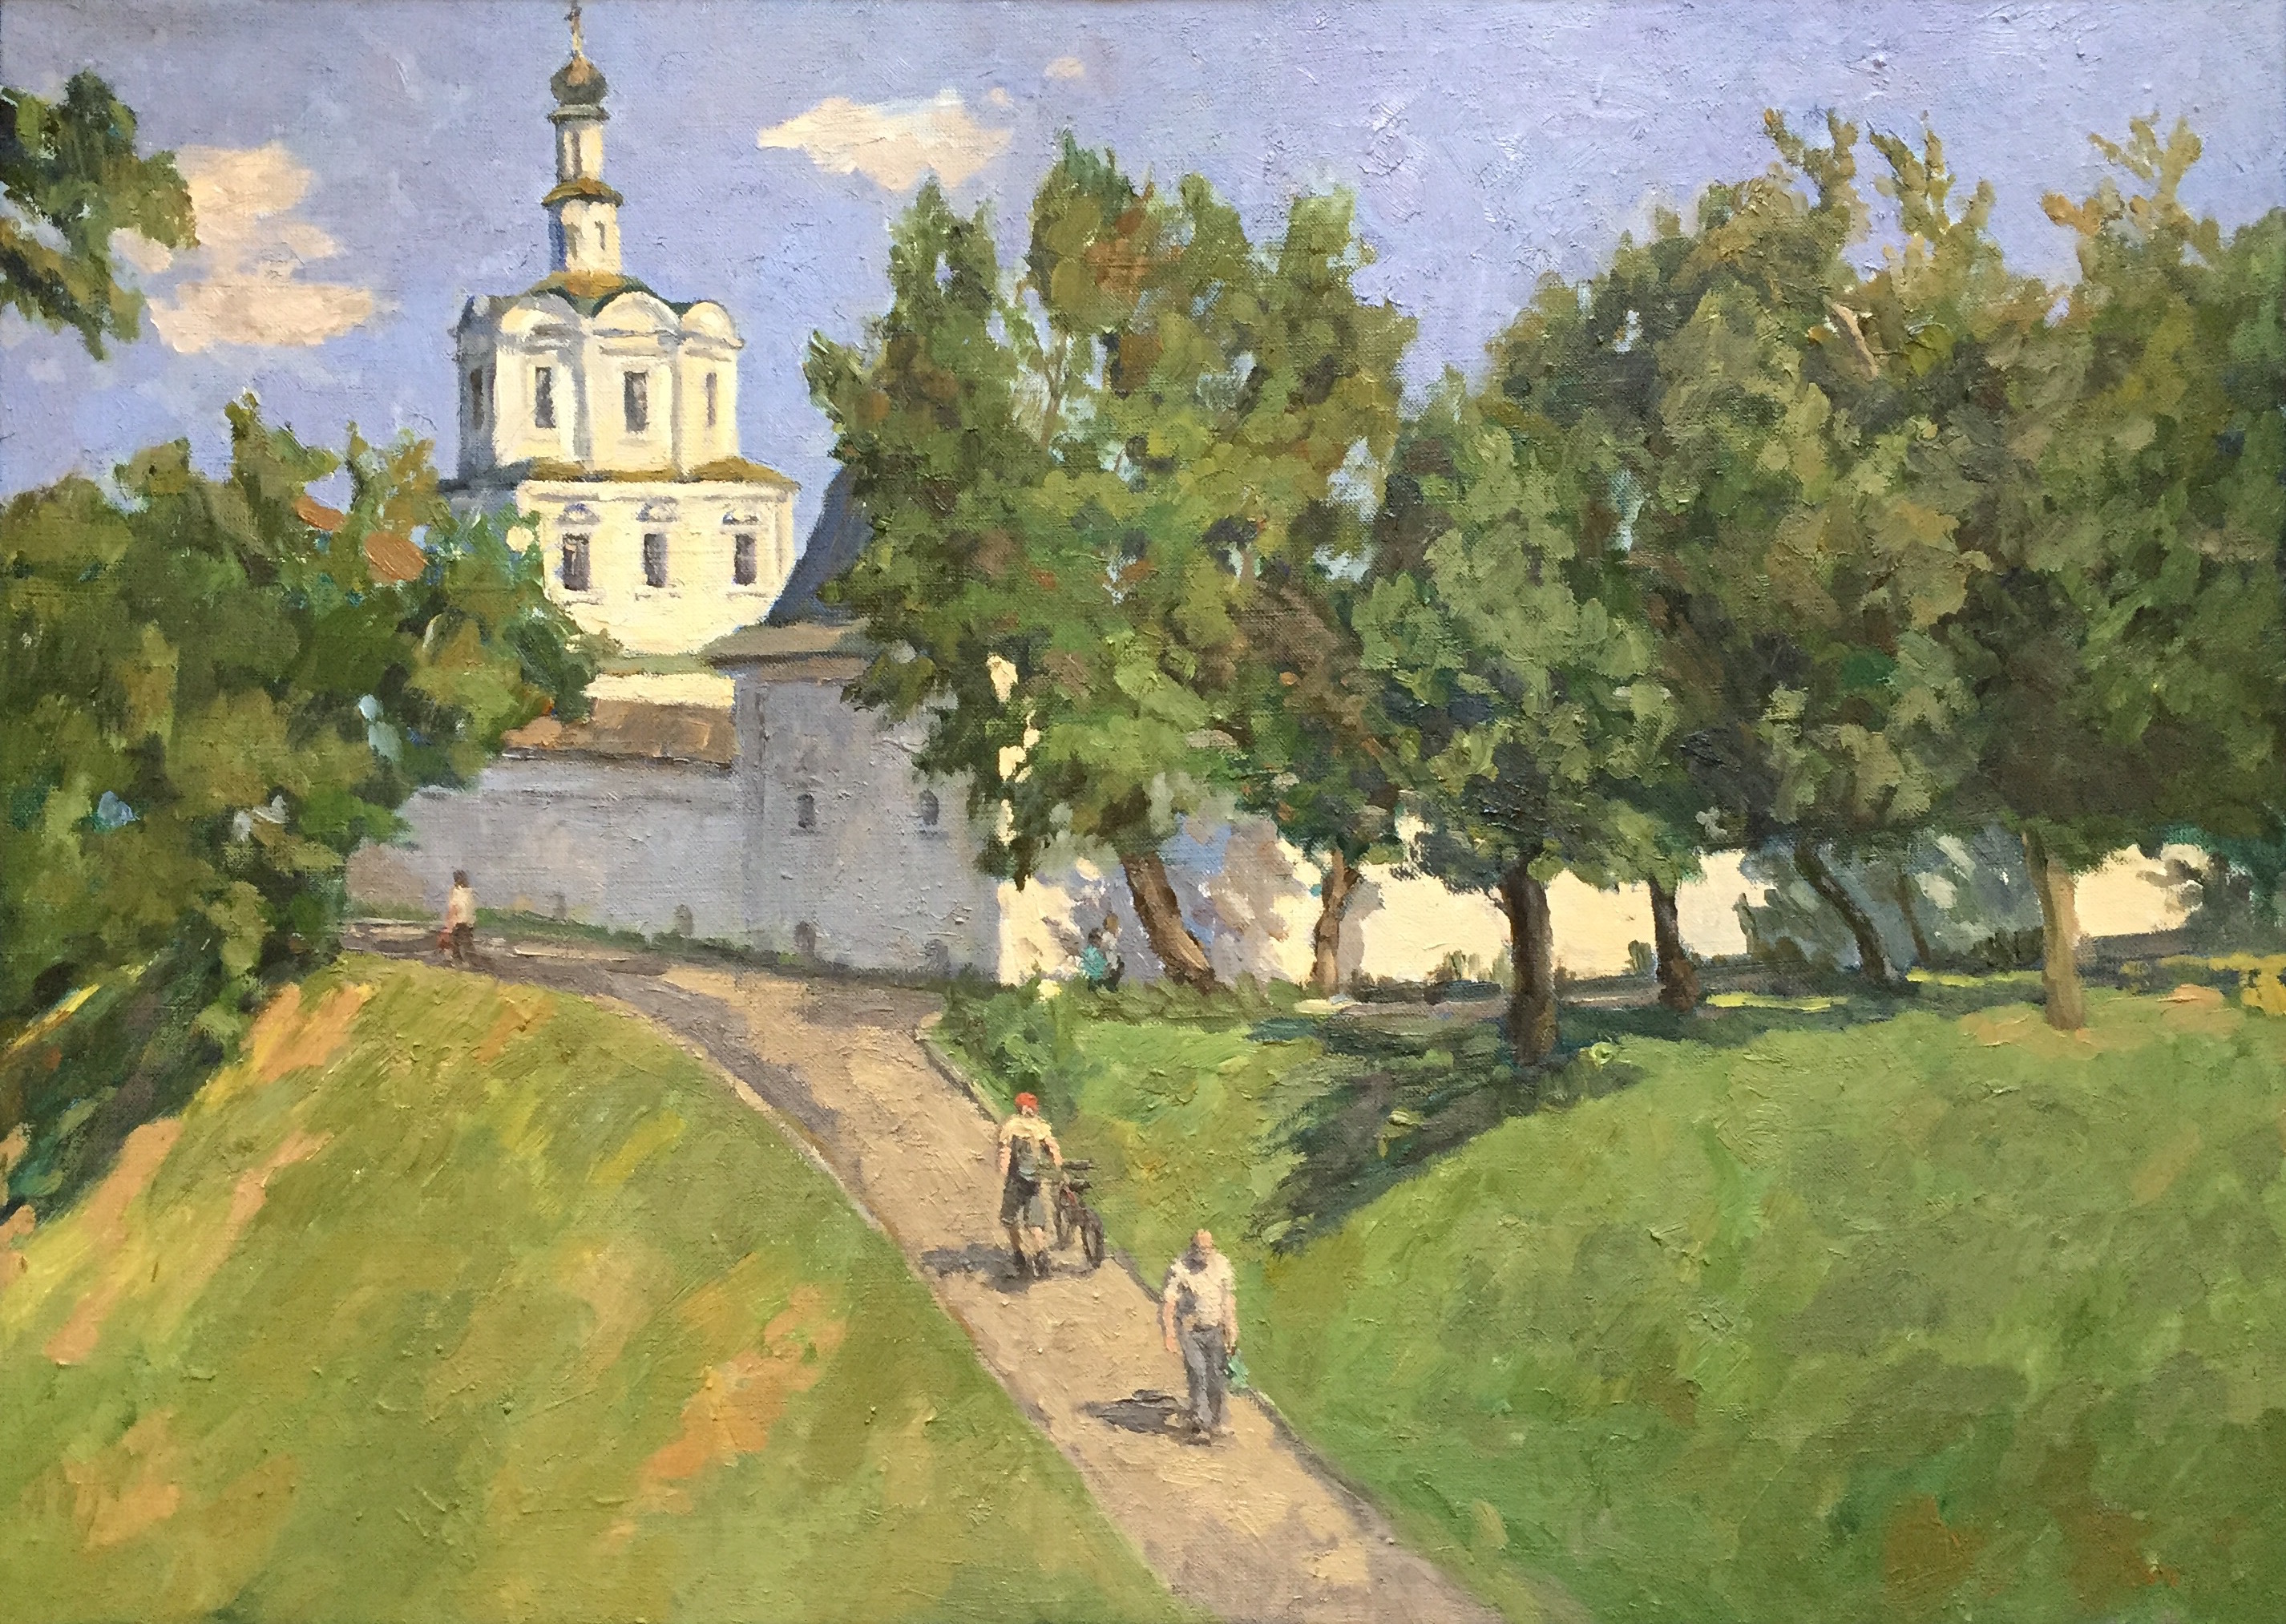 Андронников монастырь